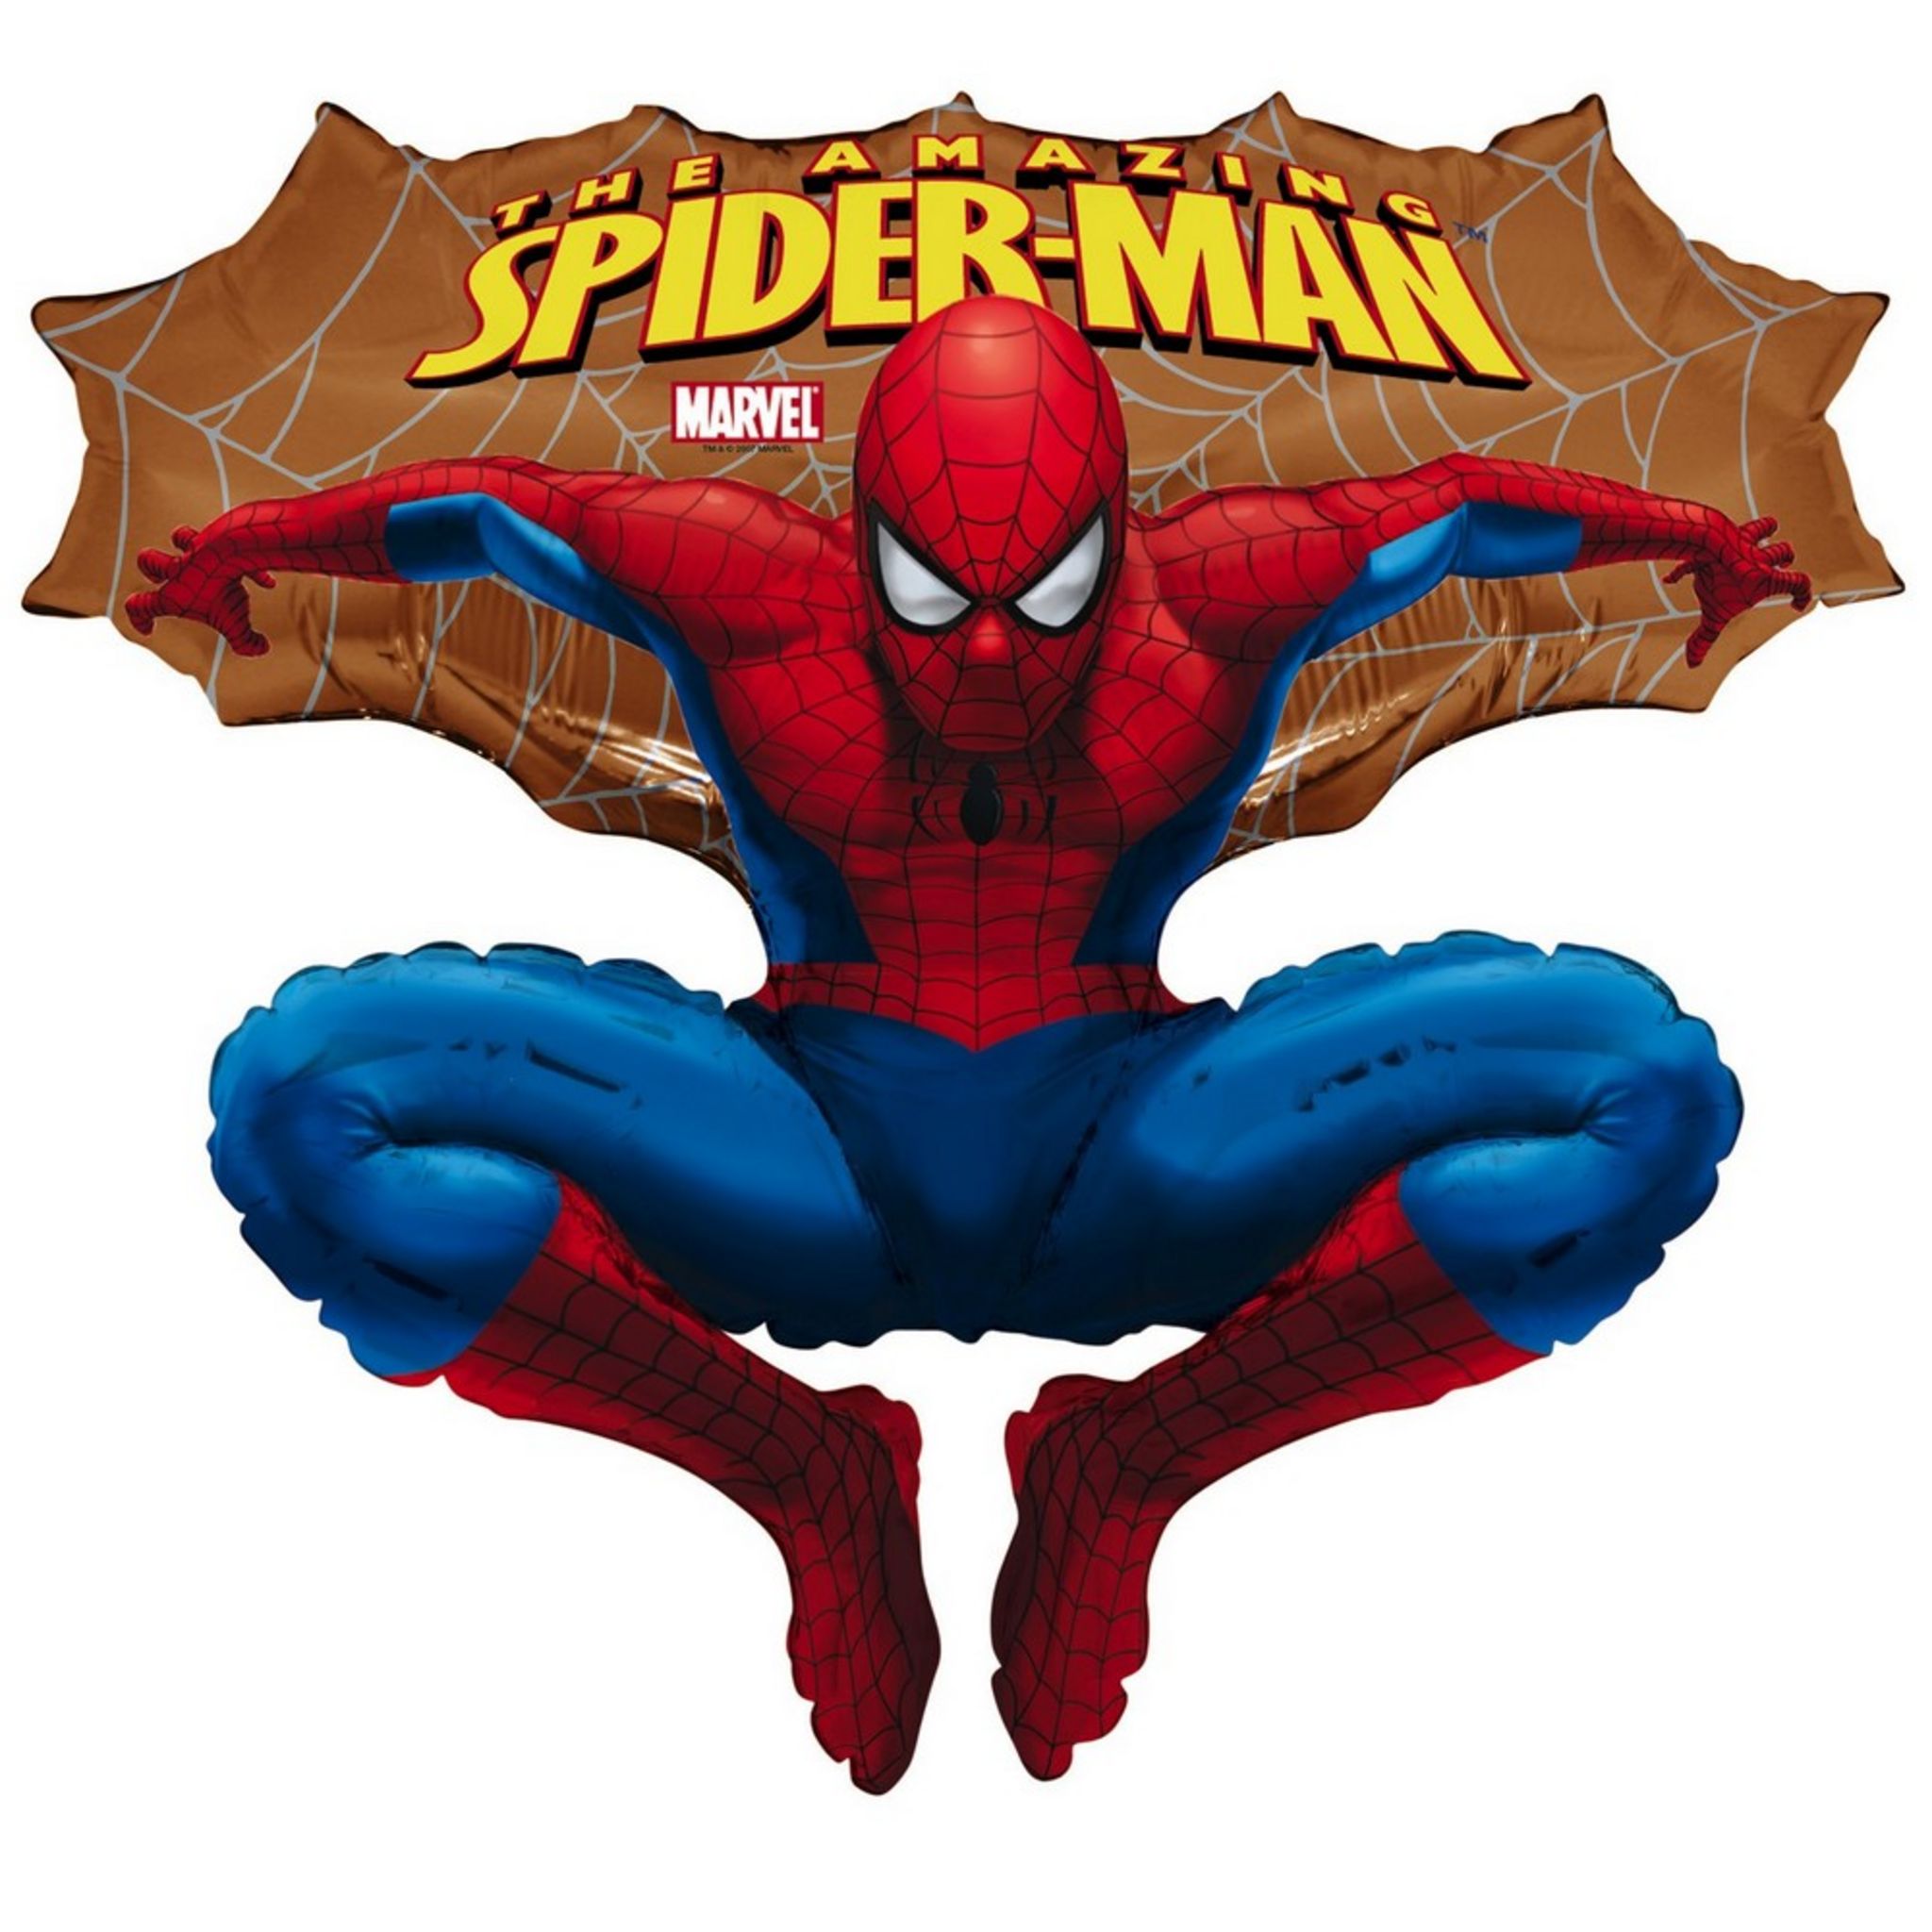 Spider Man Appareil Photo pas cher - Achat neuf et occasion